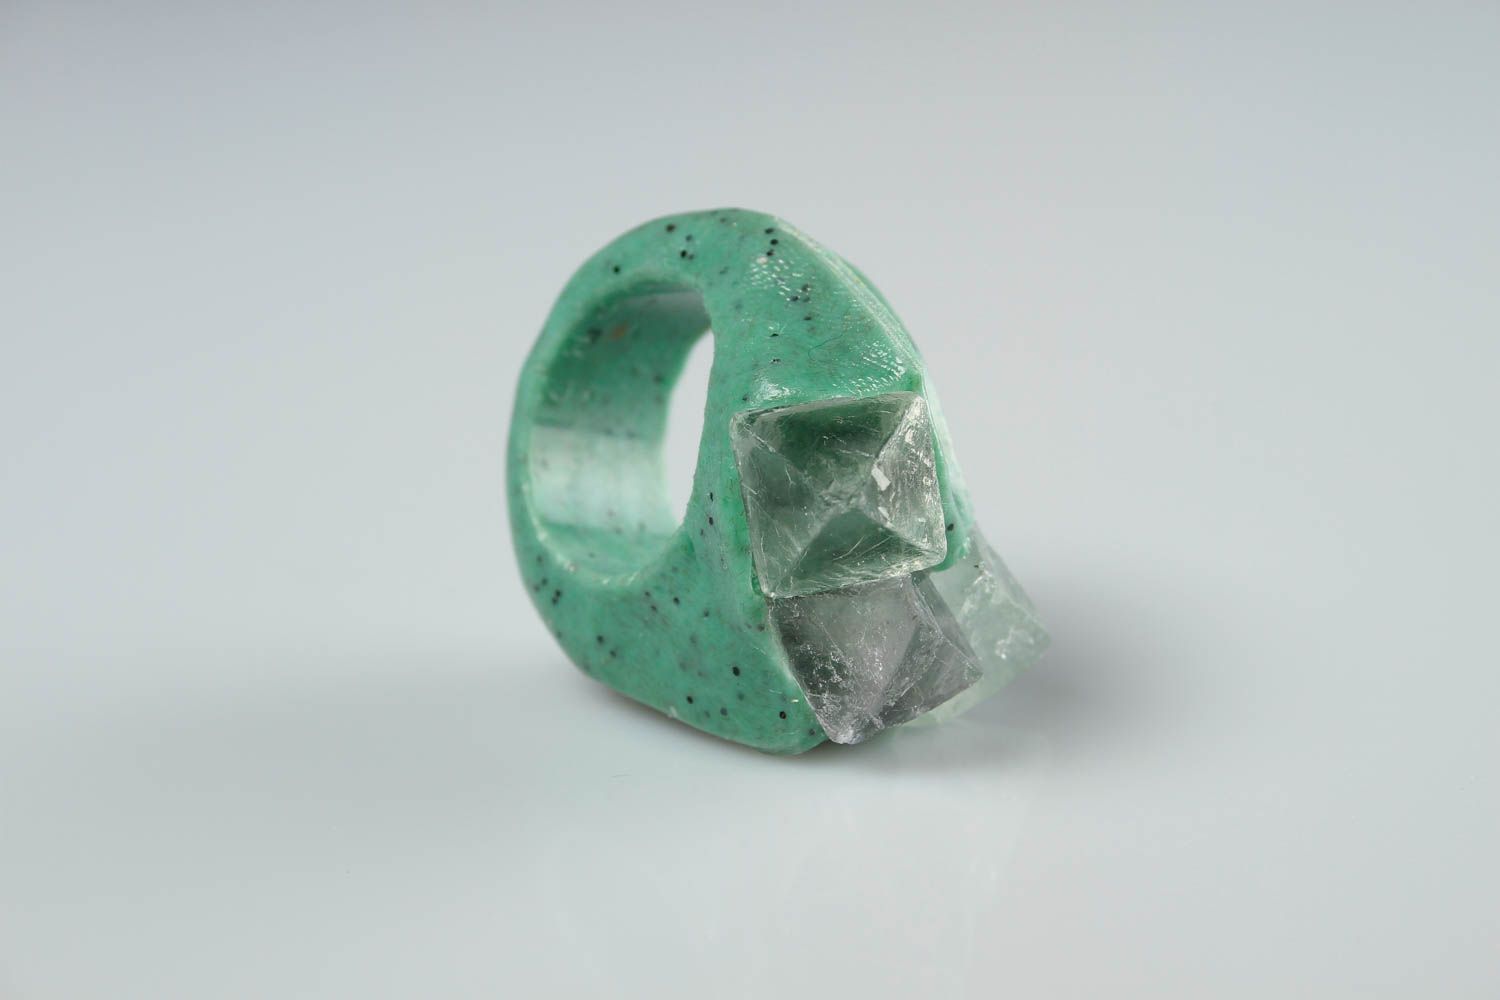 Кольцо ручной работы украшение из полимерной глины украшение кольцо модное фото 2